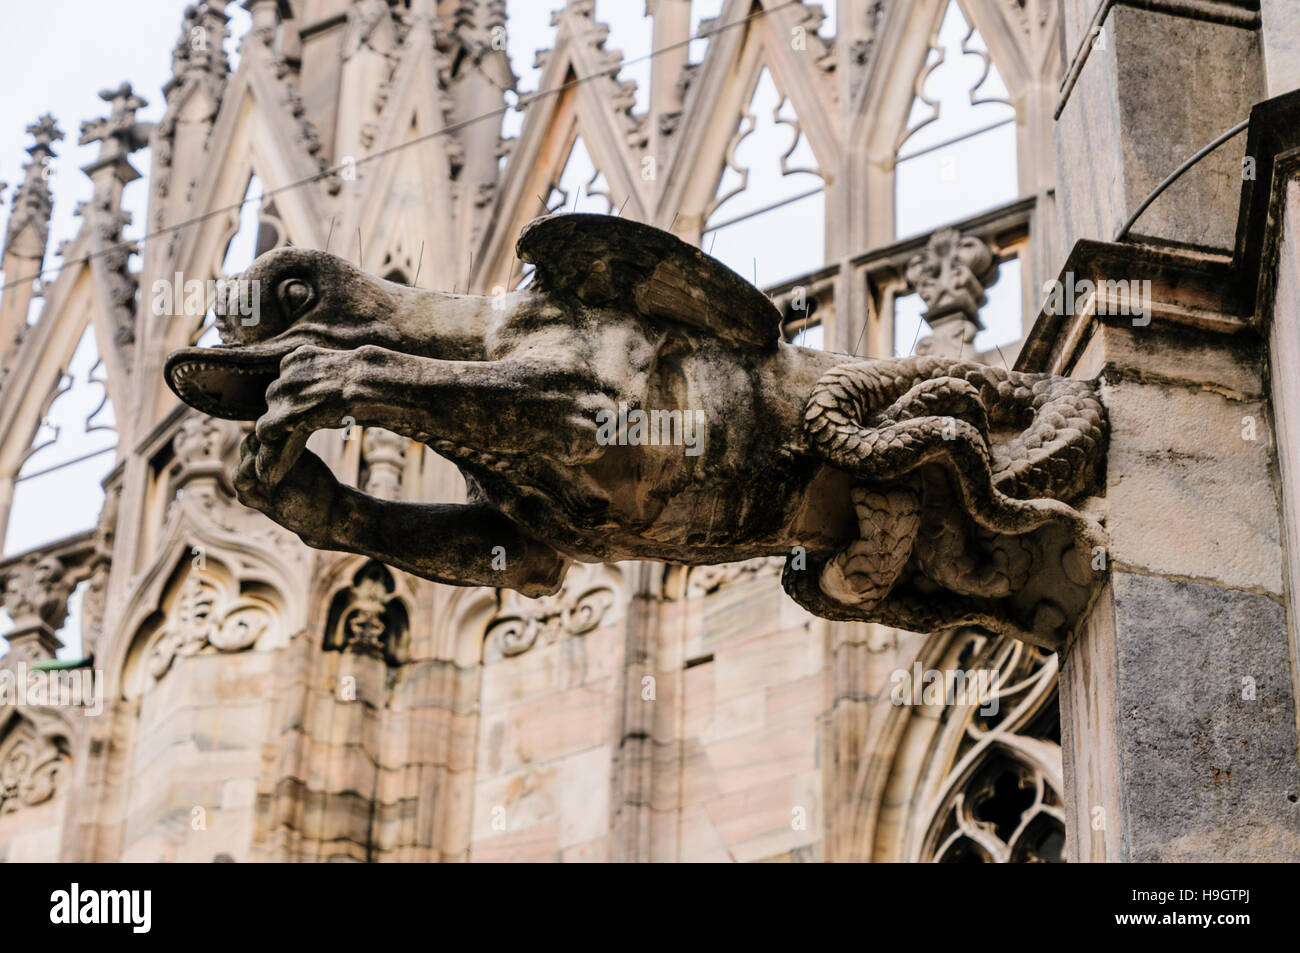 Wasserspeier und andere kunstvoll geschnitzten Mauerwerk außerhalb der Duomo Milano (Mailand Kathedrale) Stockfoto